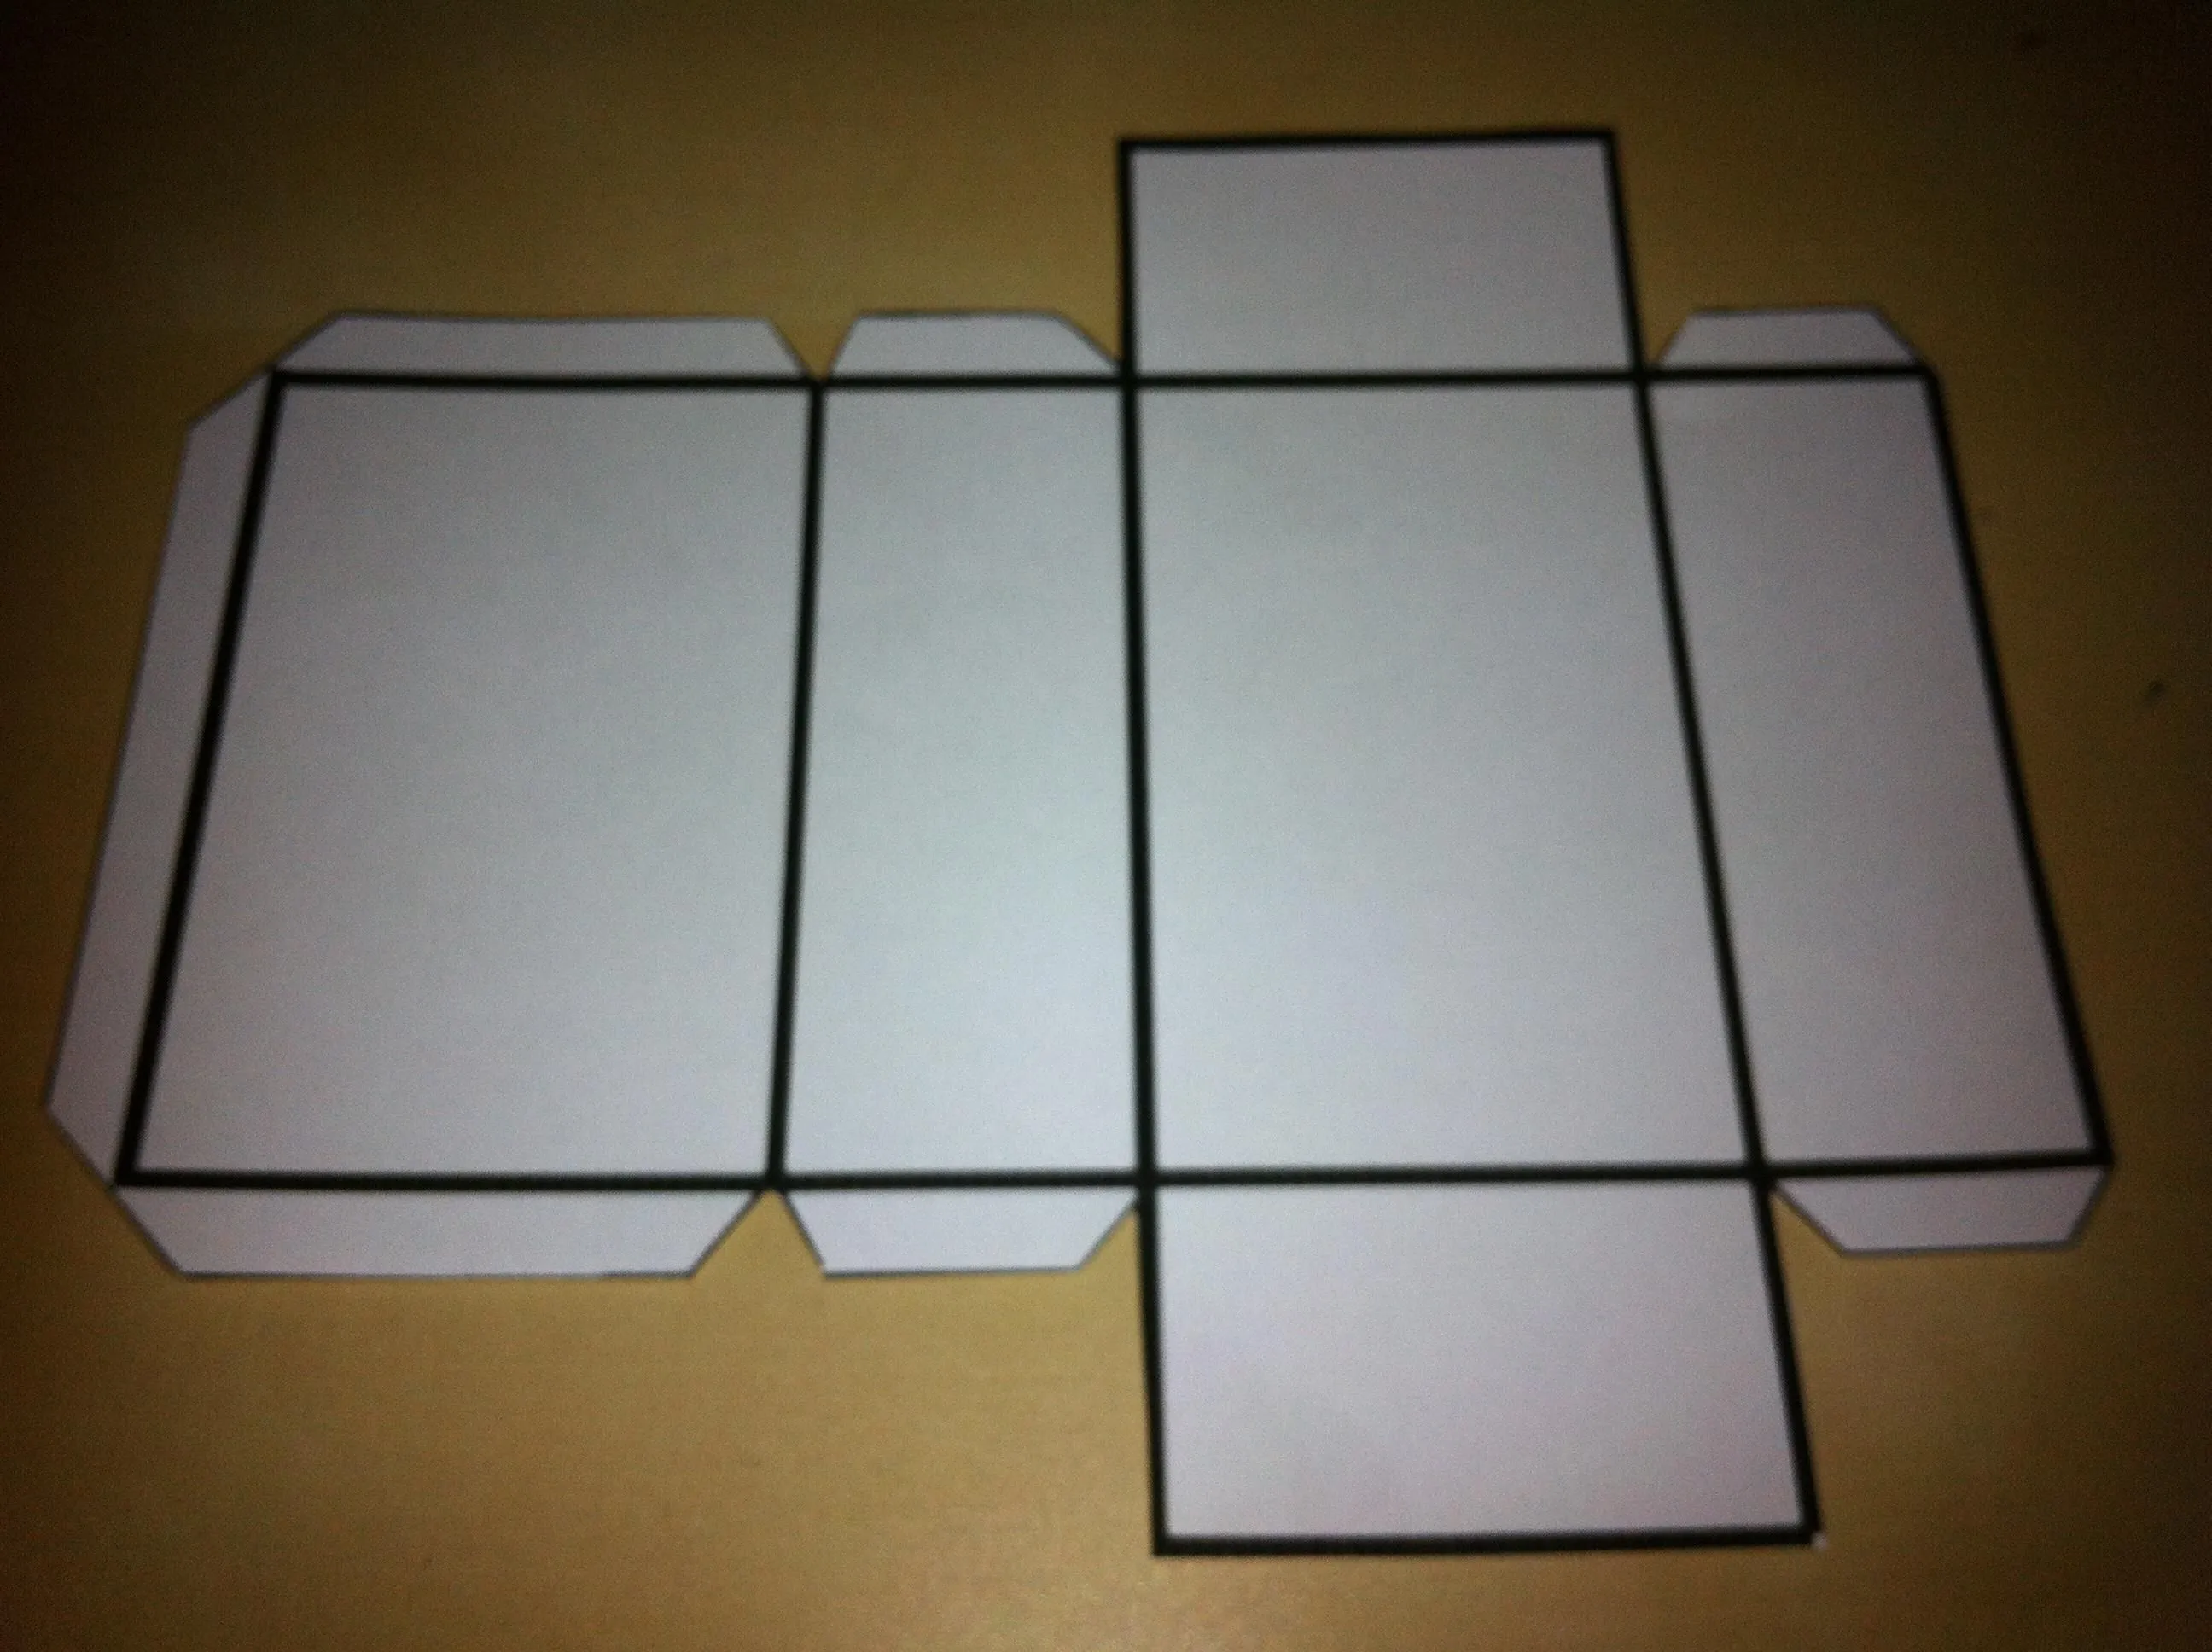 como hacer caja rectangulares - Buscar con Google | Molde caixa, Como fazer  caixa, Como fazer caixa de papel